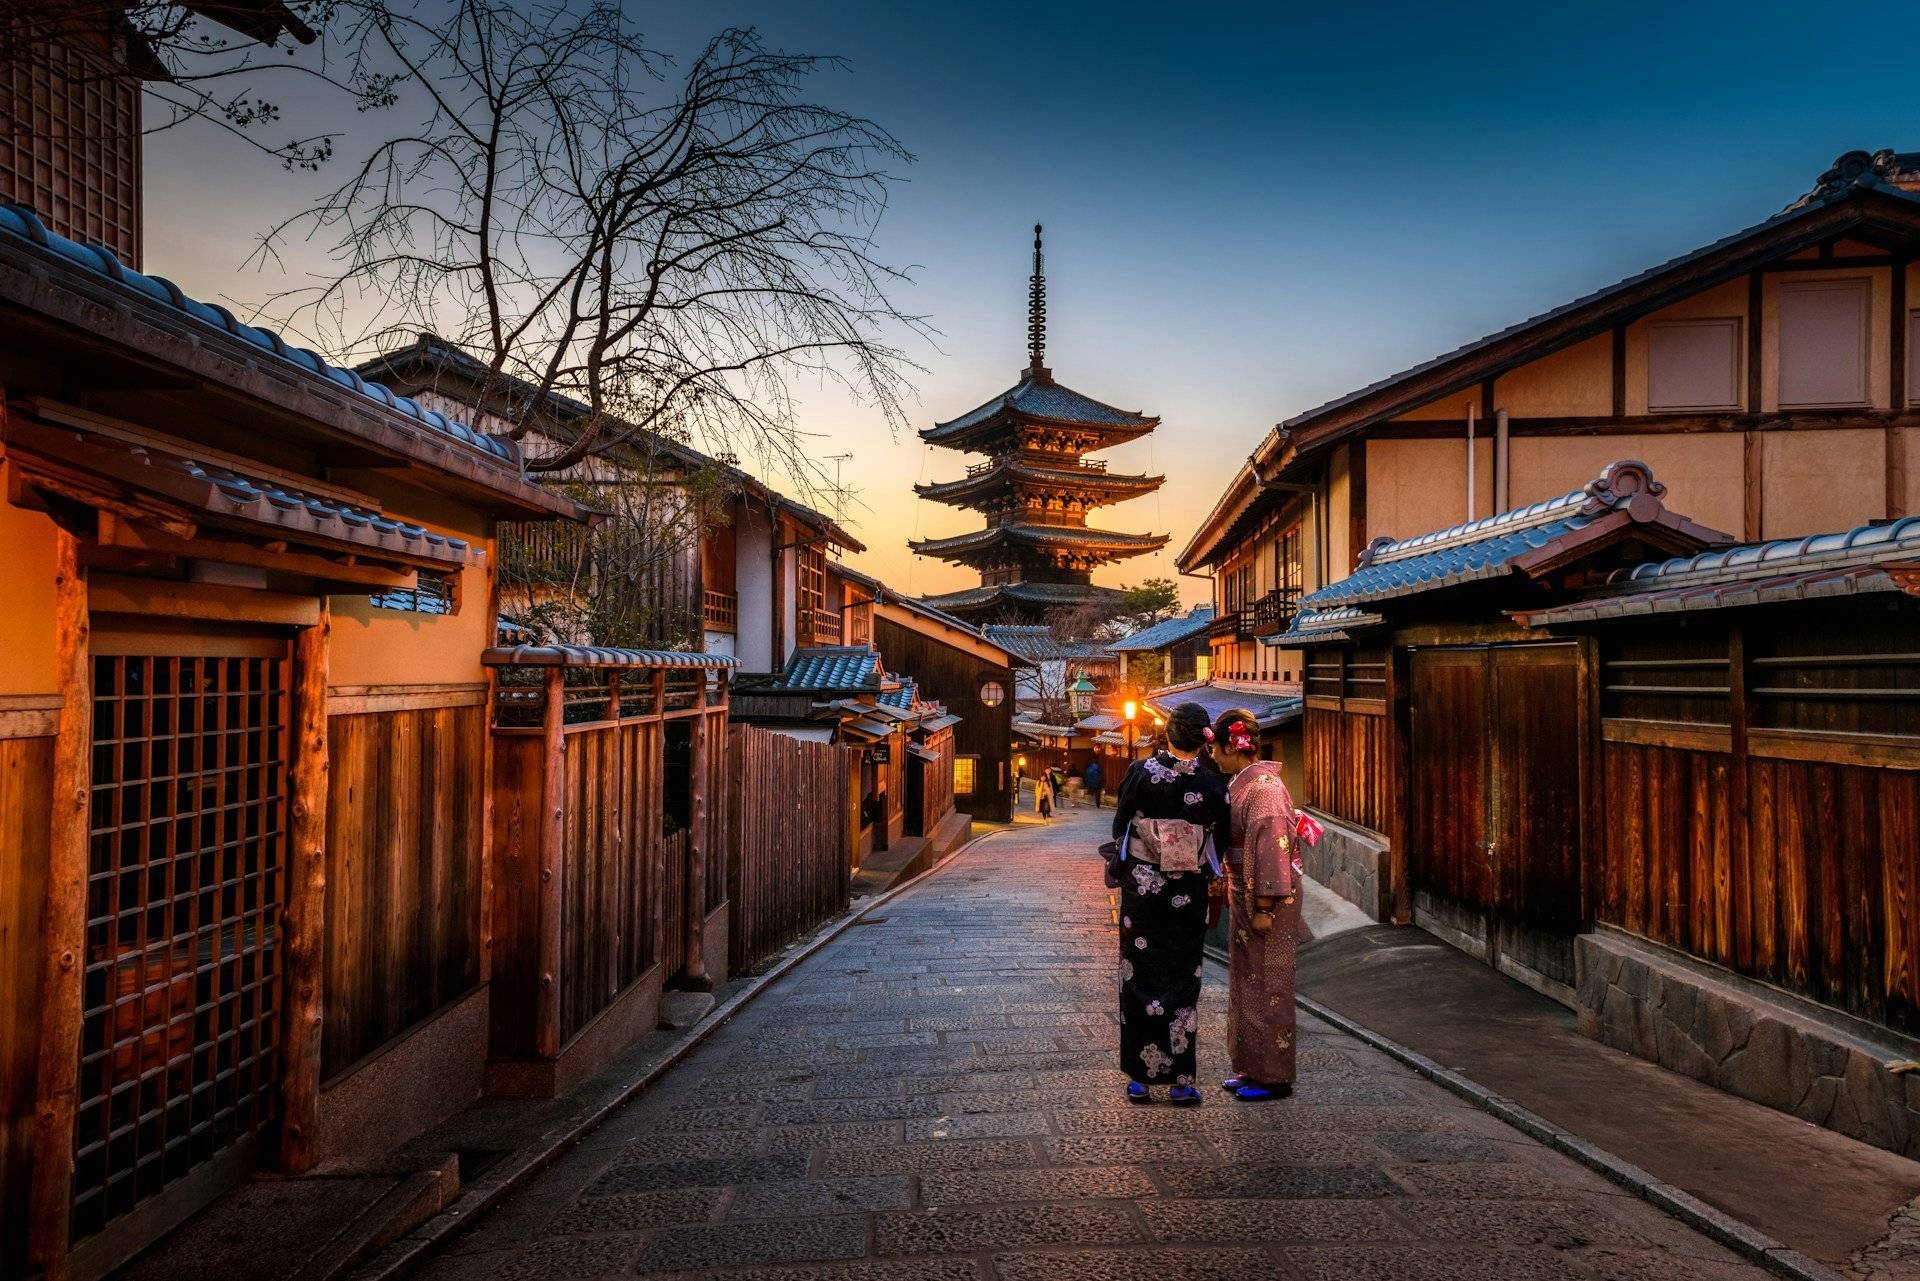 
Von der Metropole in die alte Hauptstadt Kyoto